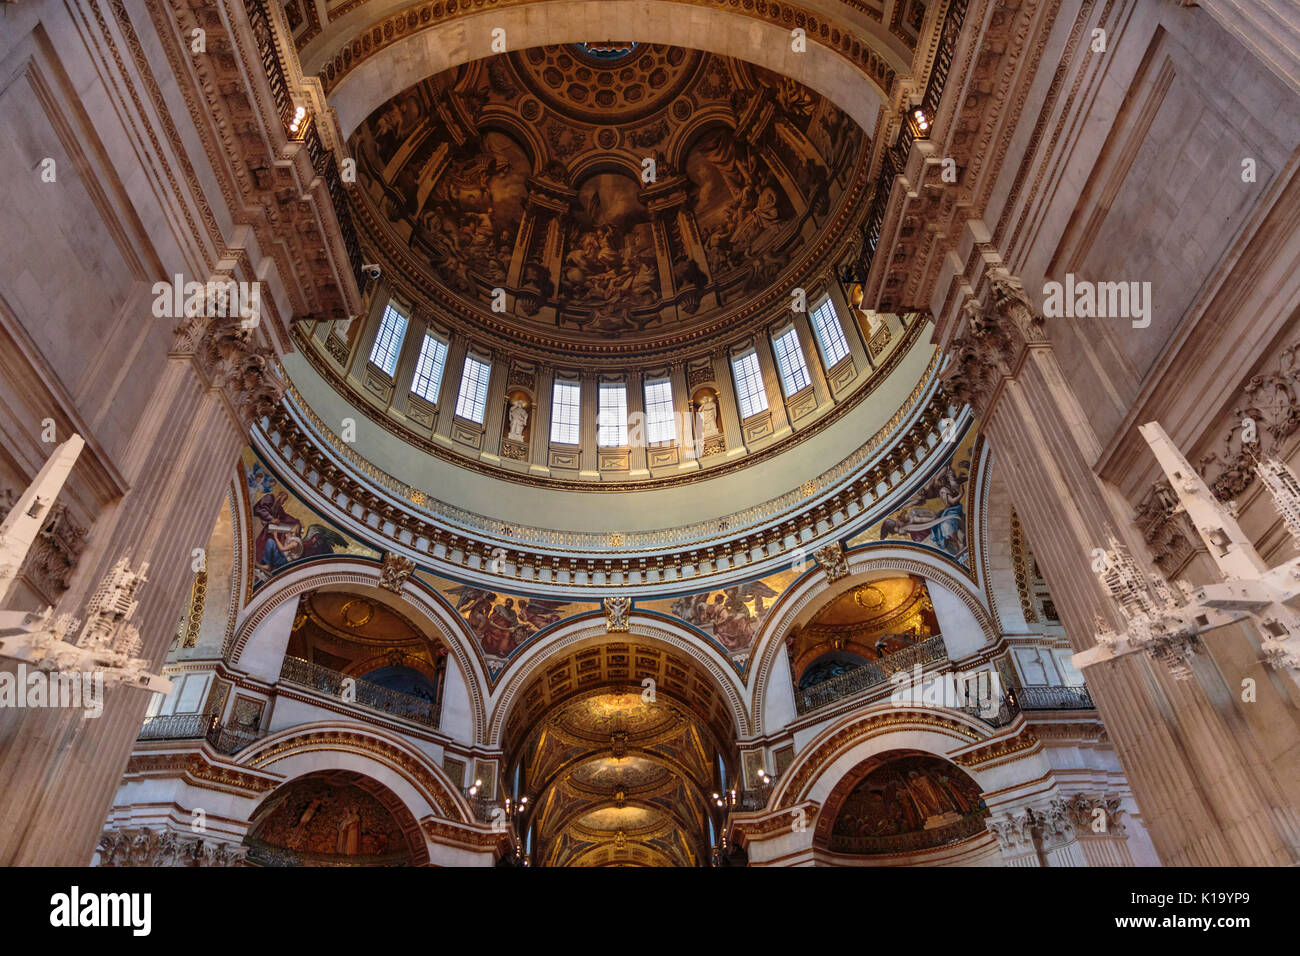 St. Paul's Cathedral Innenraum, Blick bis zur Decke Wandgemälde, Gemälde, Mosaiken und vergoldeten Dekorationen, innere Kuppel, London, England Stockfoto